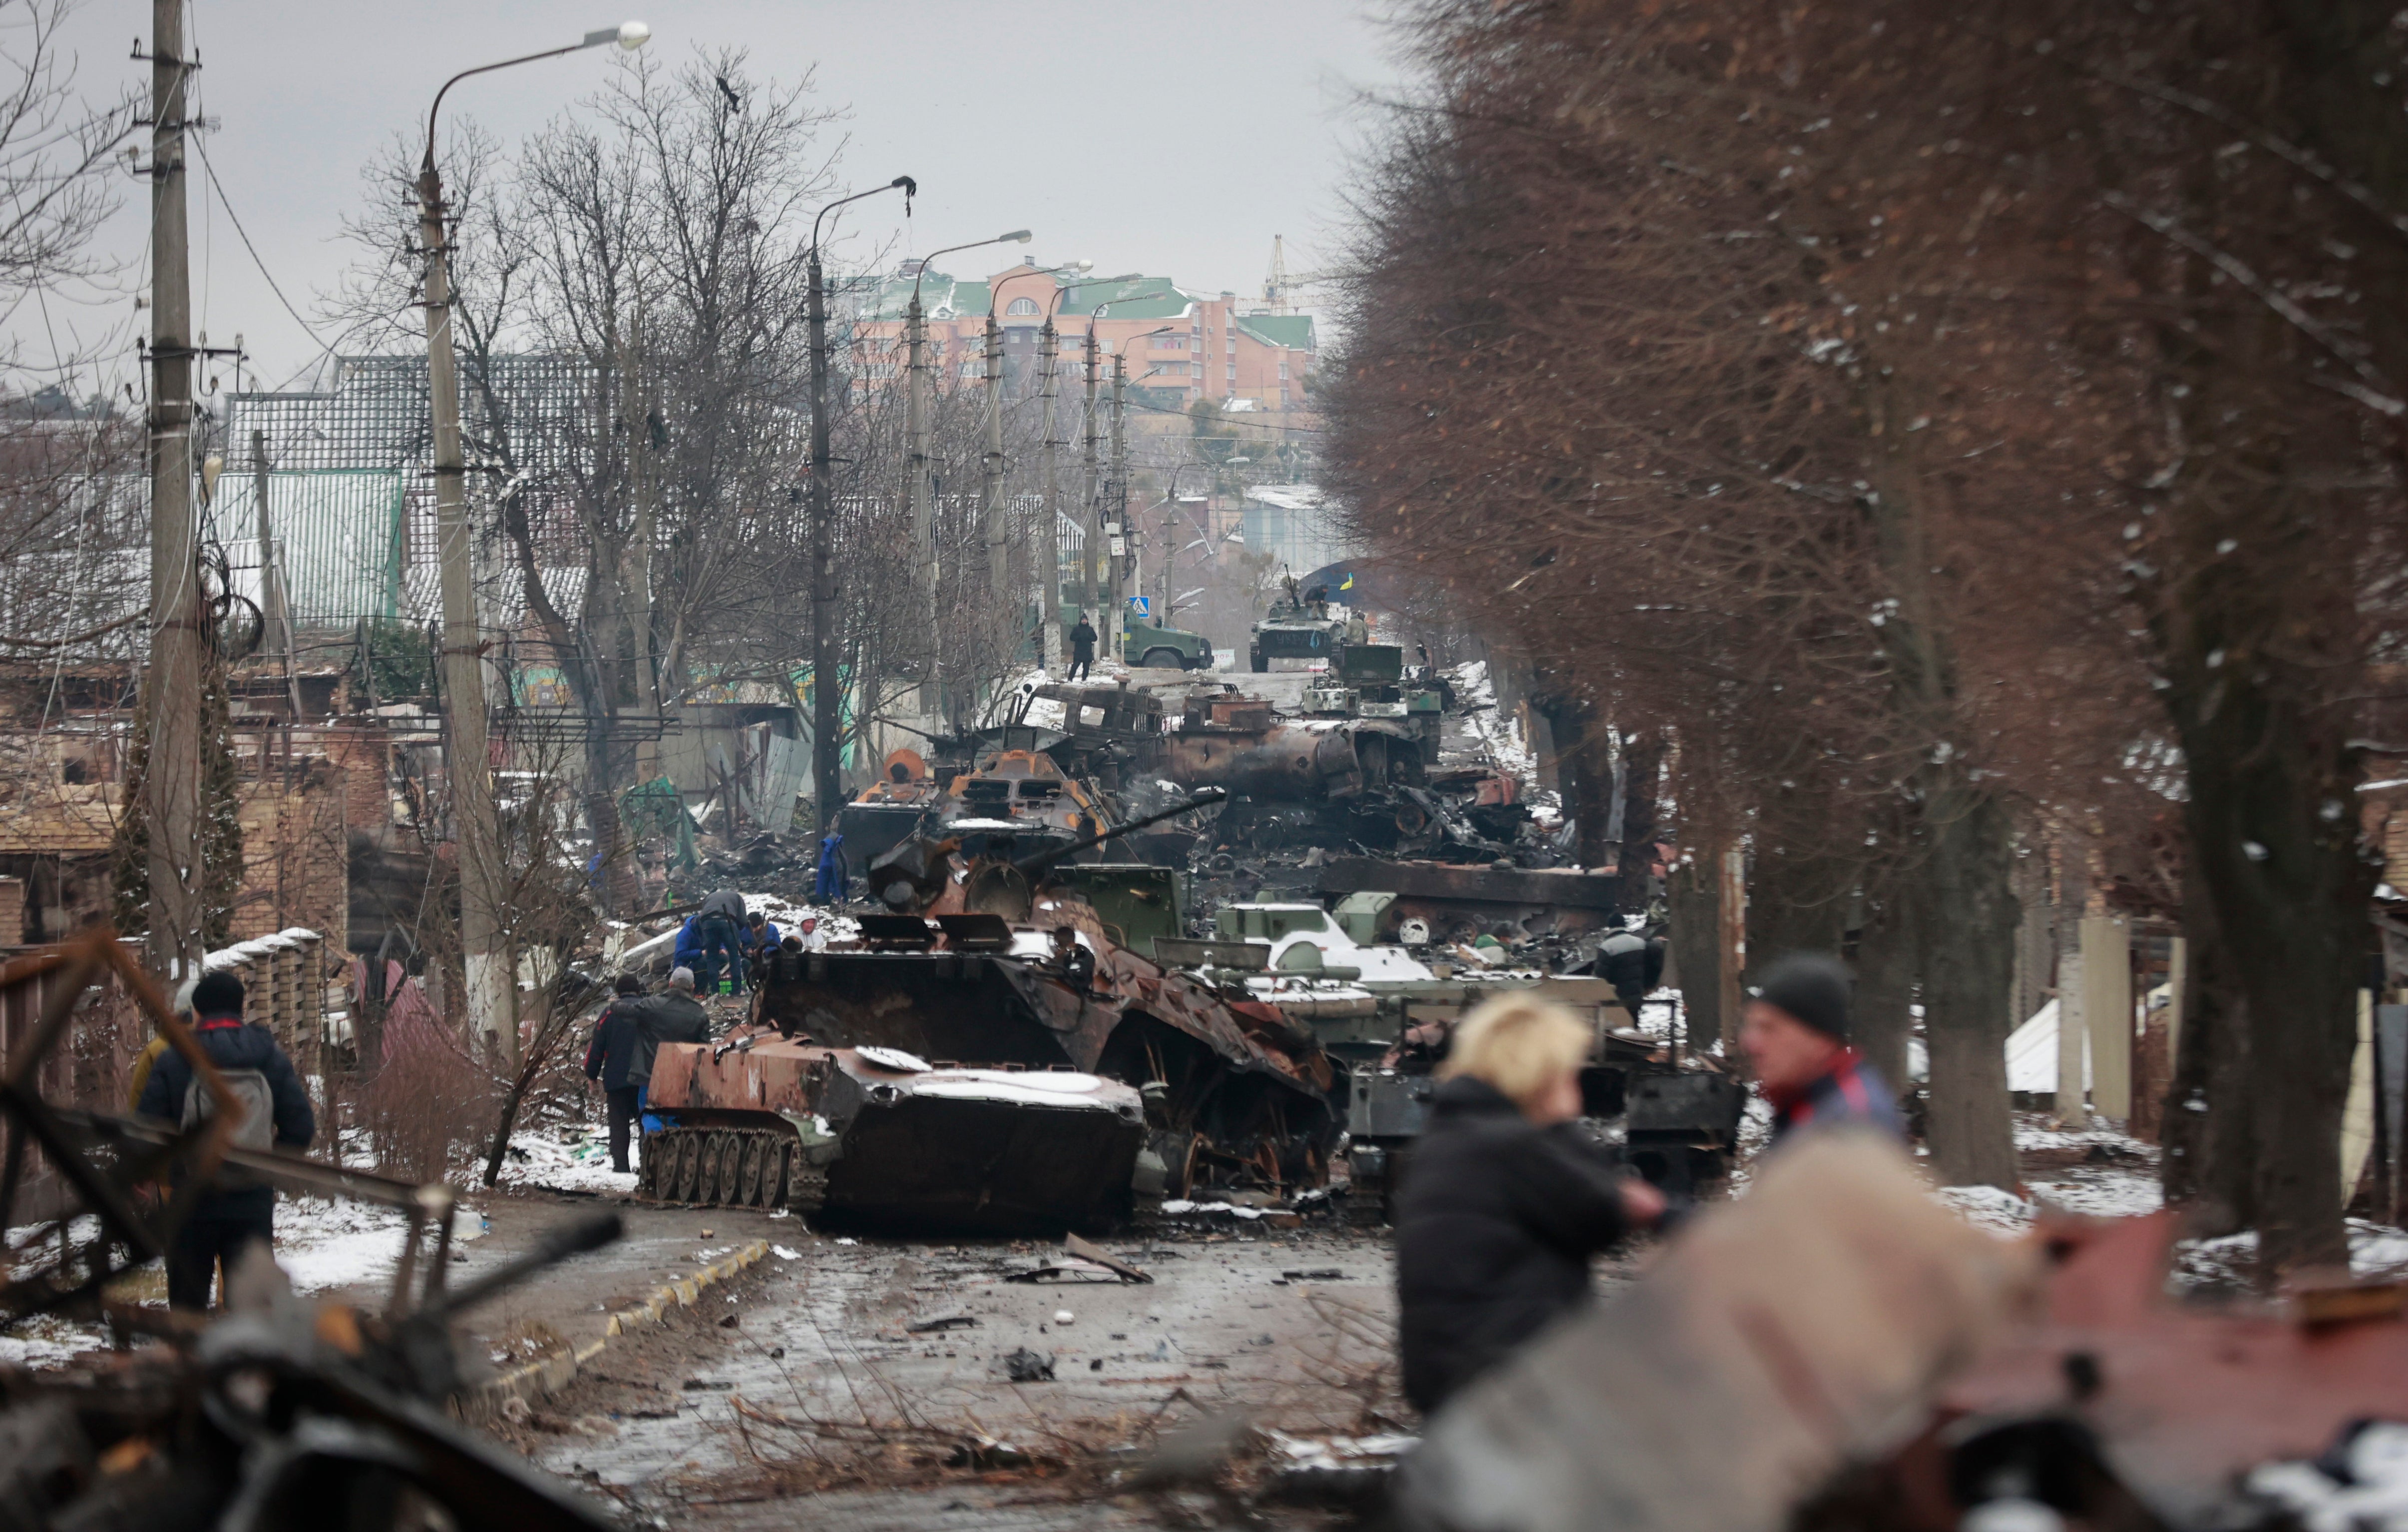 Las personas observan los restos de los vehículos militares rusos sobre un camino en el pueblo de Bucha, cerca de Kyiv, Ucrania, el martes 1 de marzo, 2022